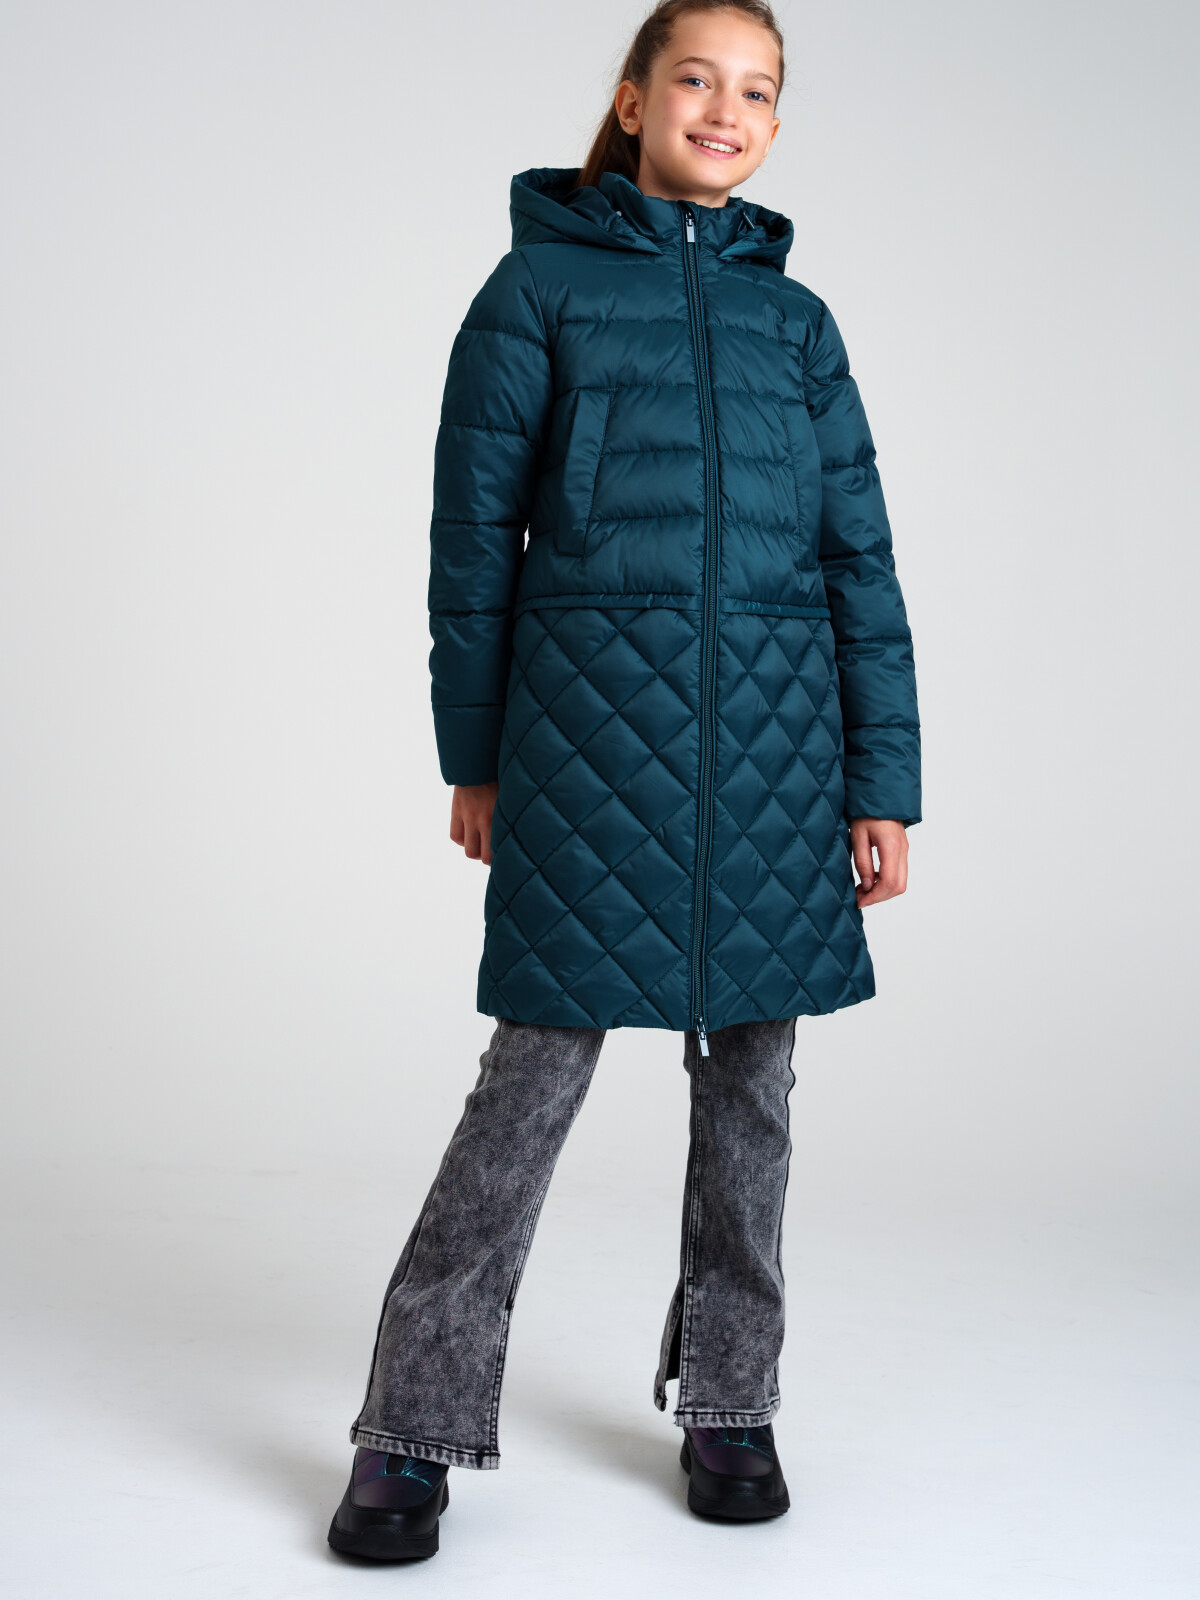 Пальто текстильное с полиуретановым покрытием для девочек PlayToday, темно-зеленый, 122